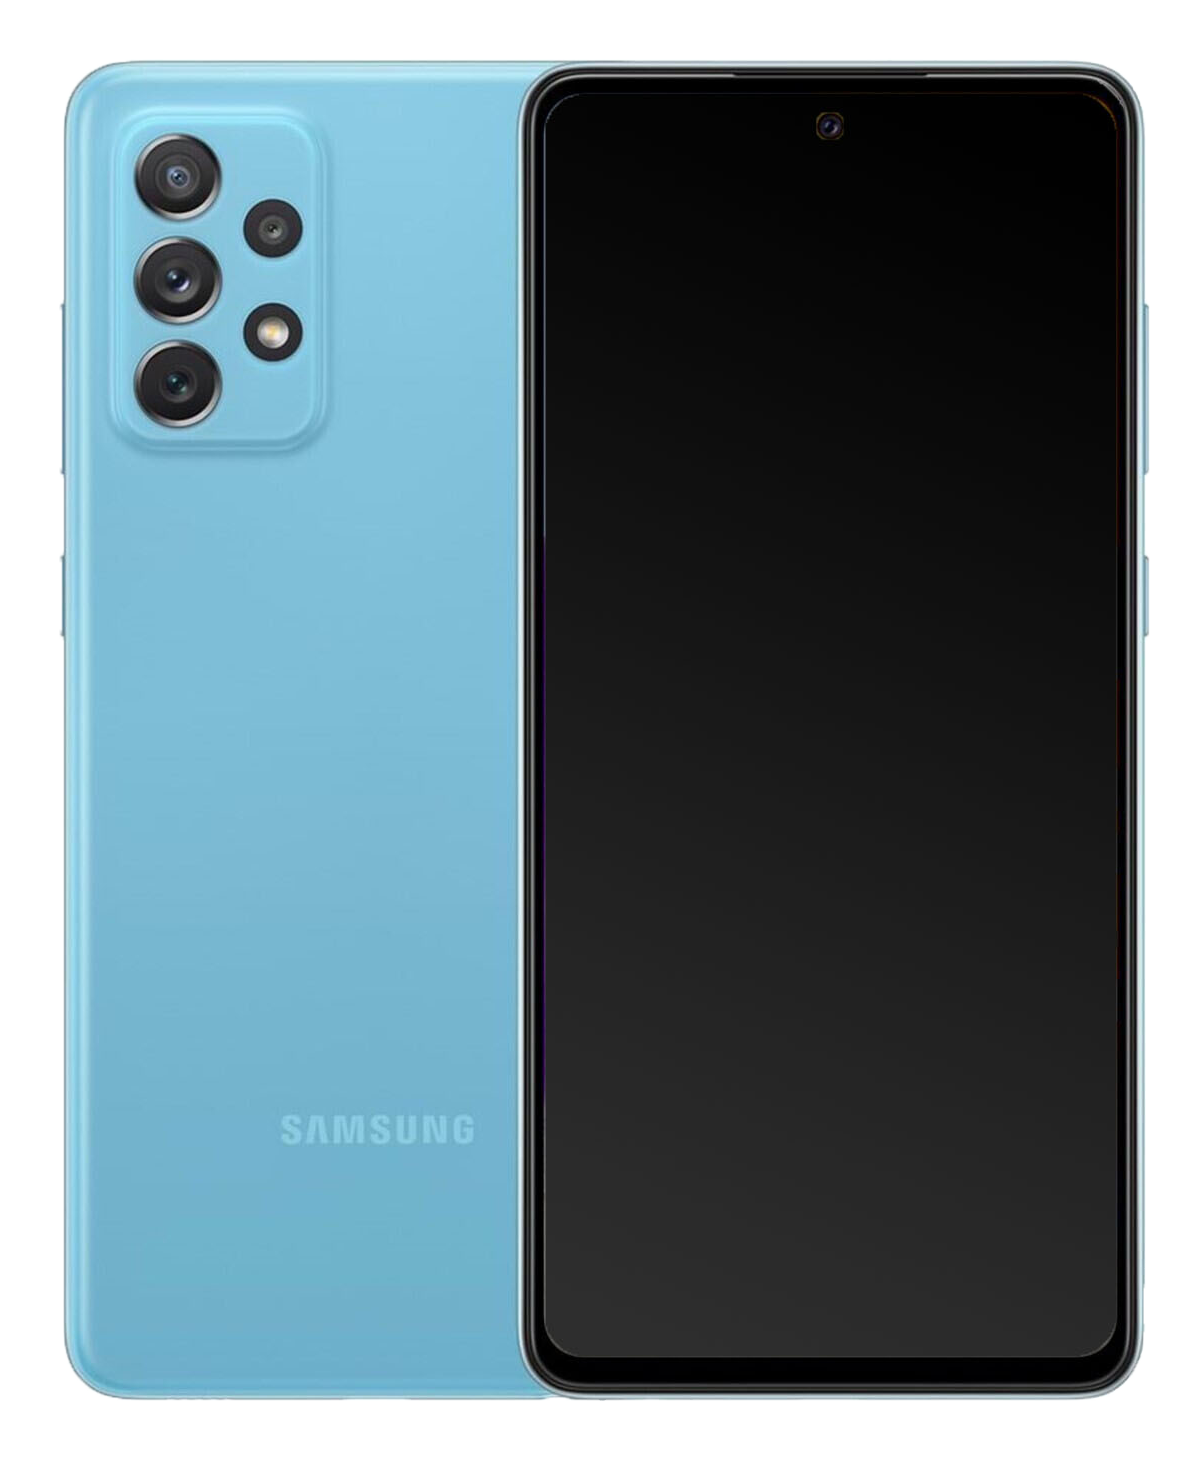 Galaxy A72 dual SIM